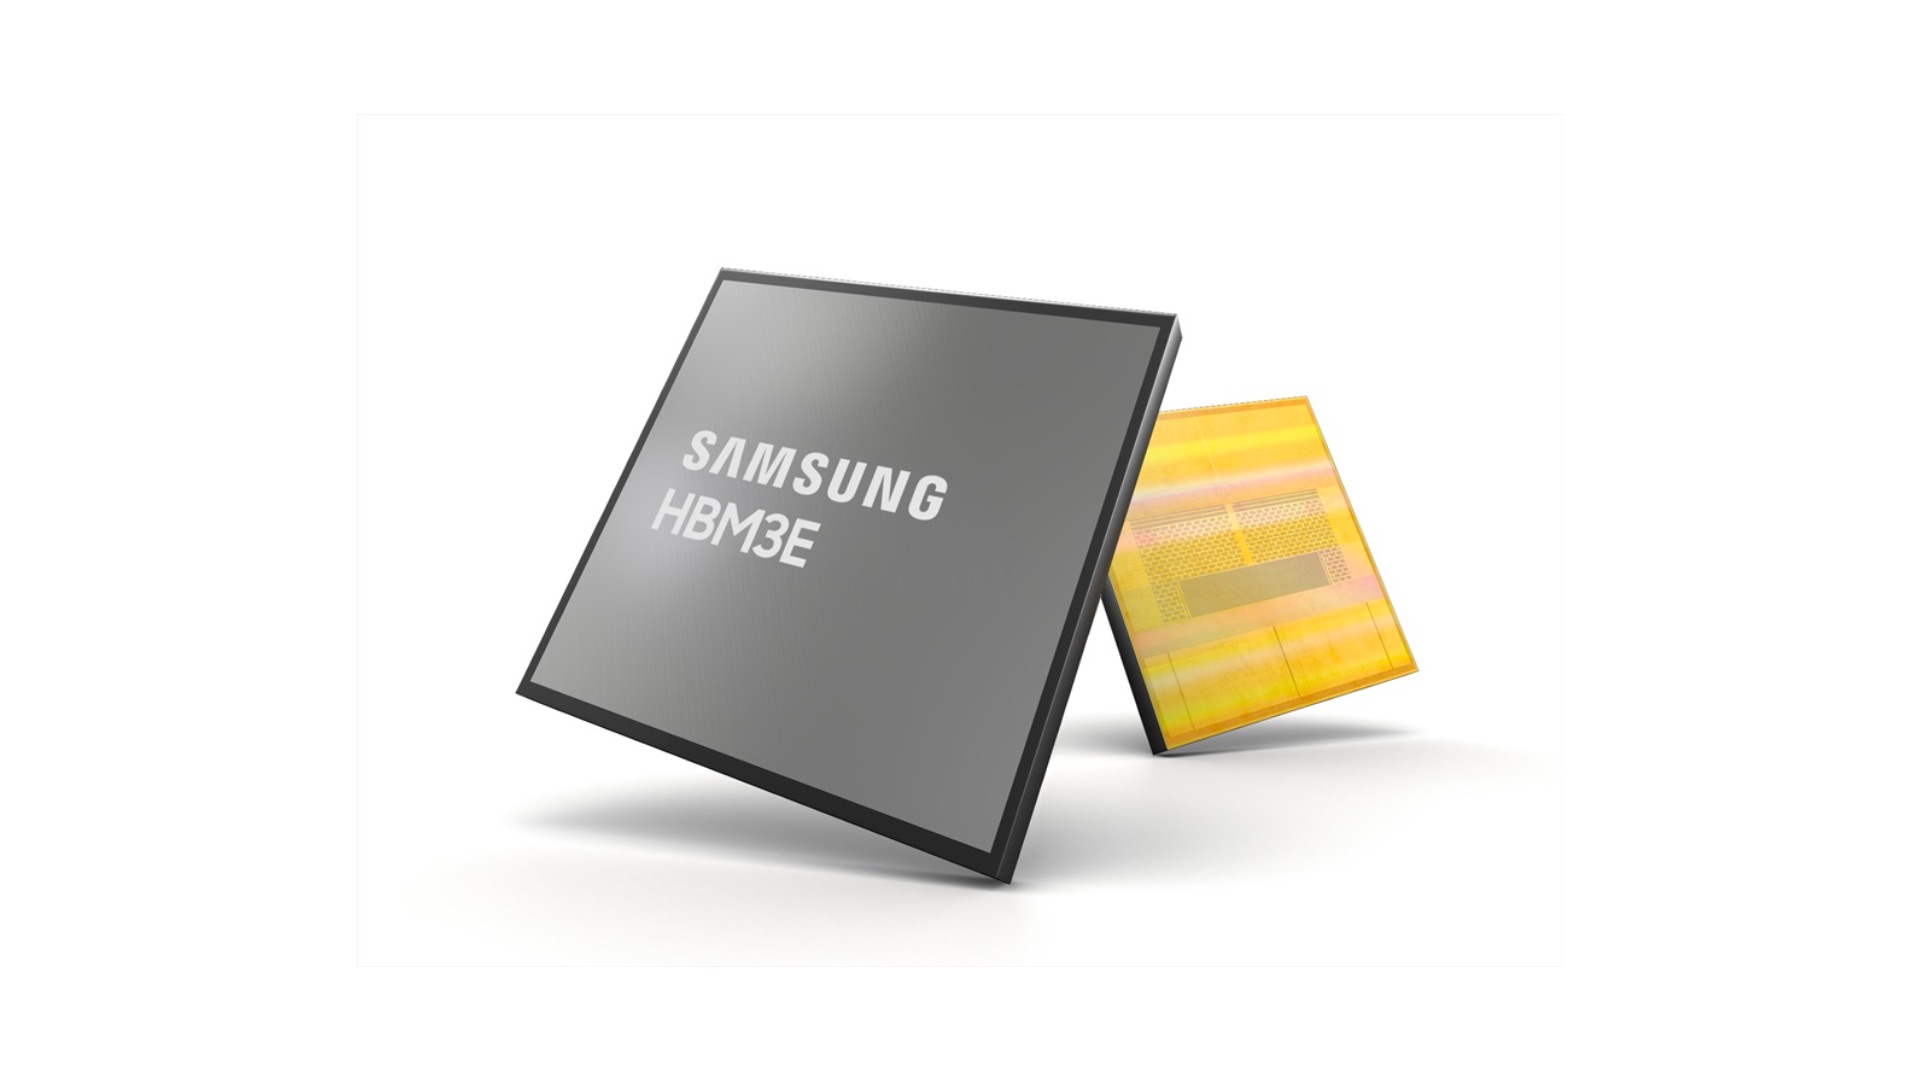 Китайські компанії протягом кількох місяців масово закуповують високопродуктивні чипи Samsung HBM 